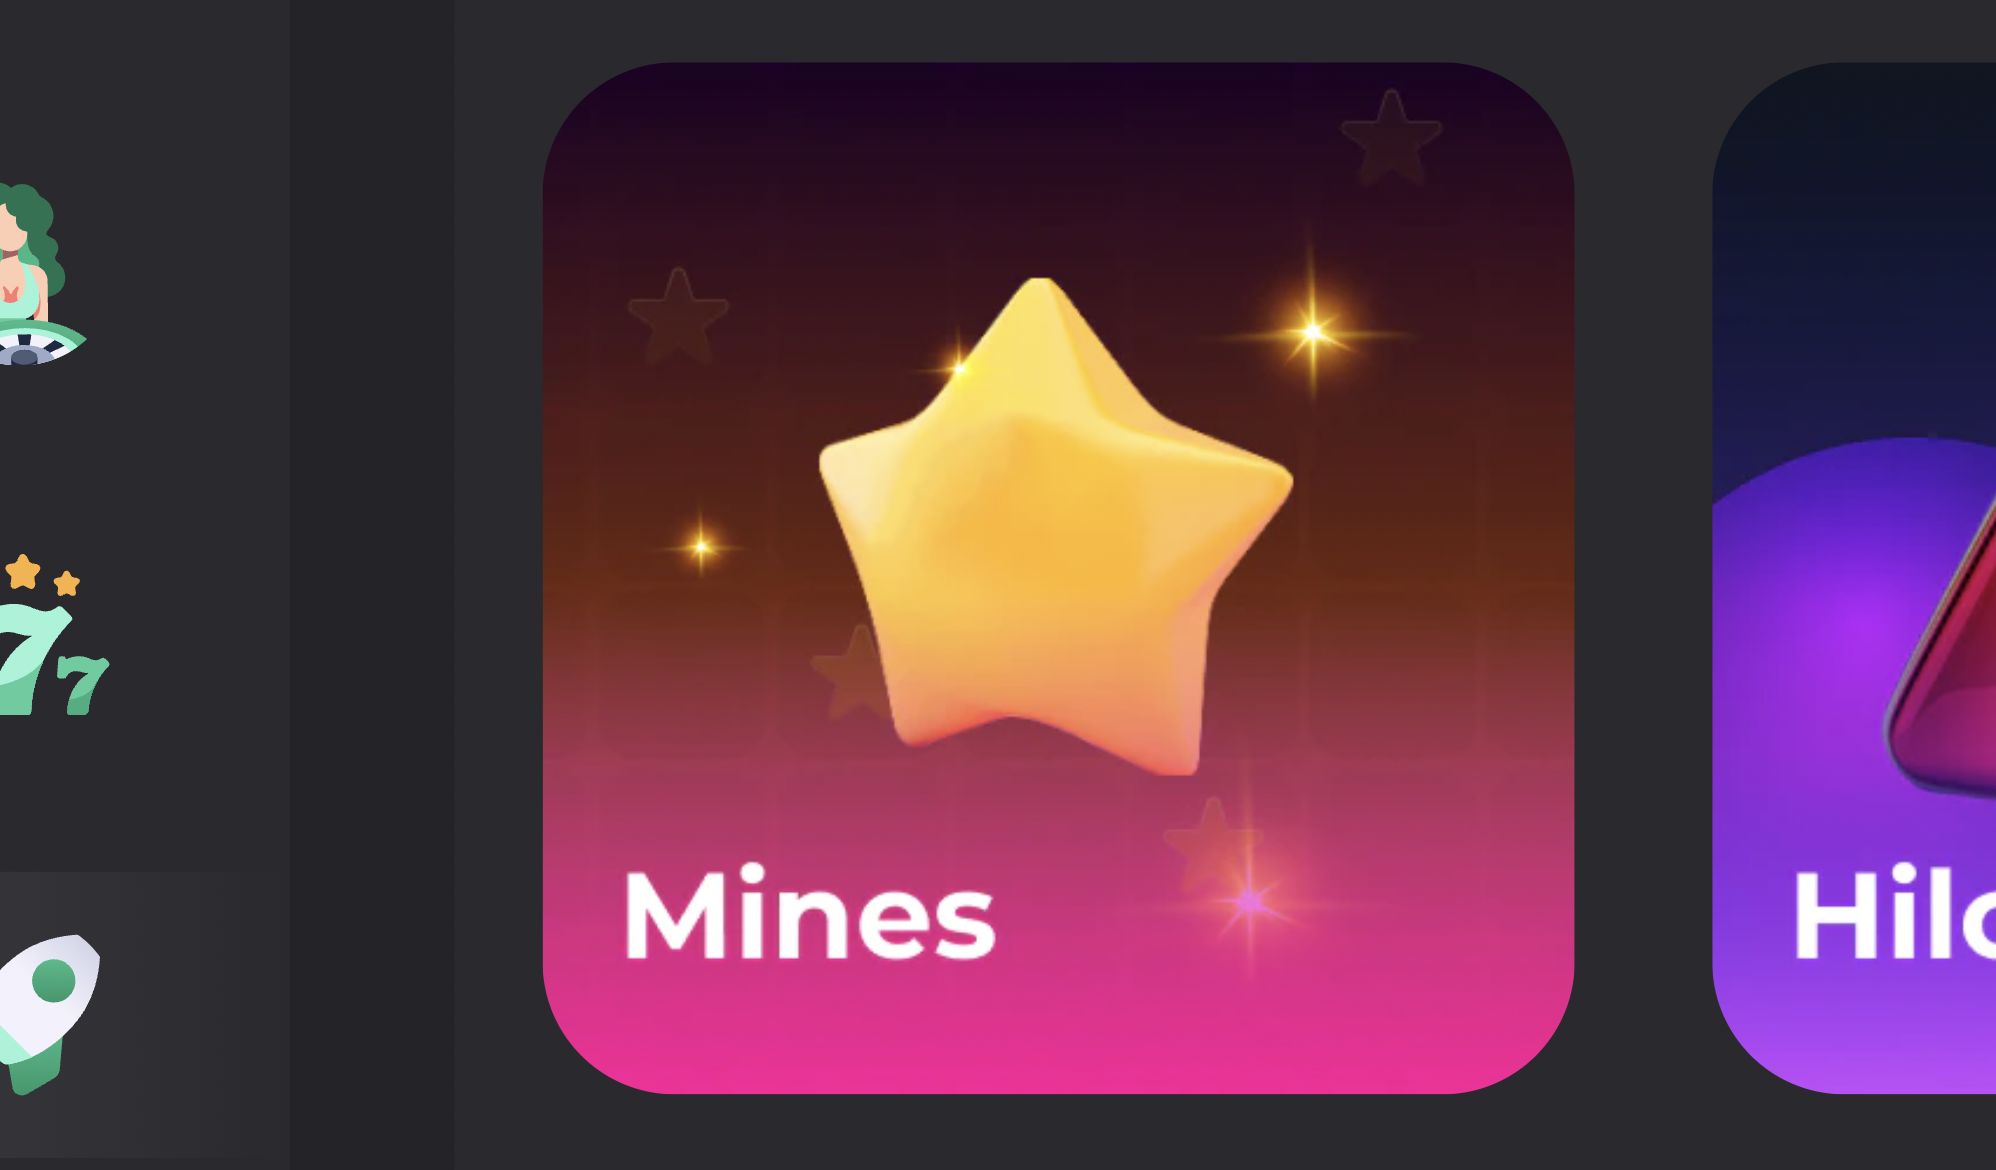 Mines thường được biết đến với cái tên khác là Dò mìn